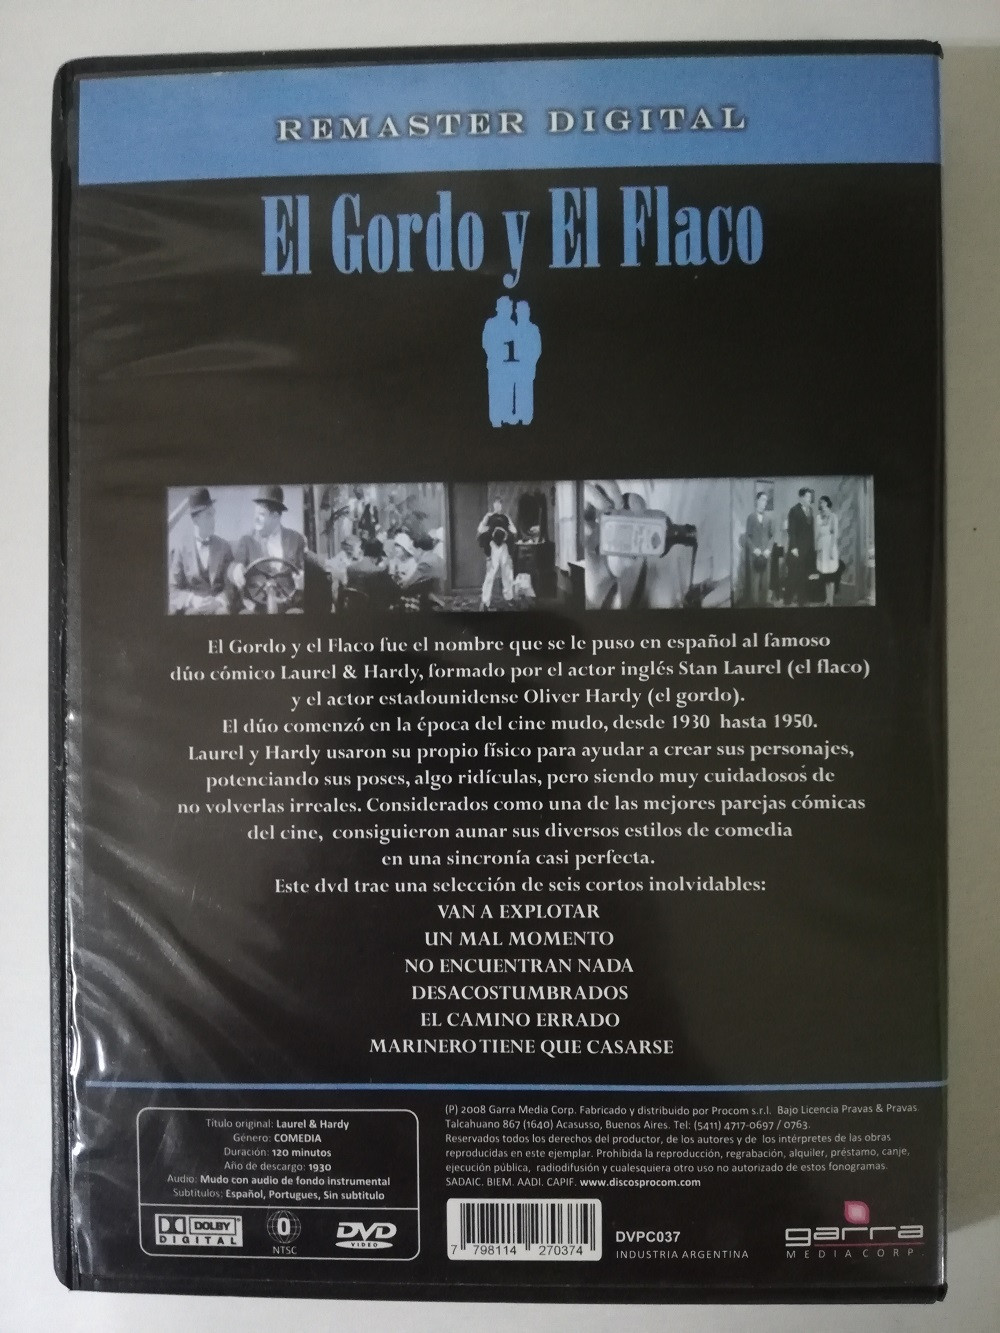 Imagen DVD X 2 EL GORDO Y EL FLACO - 6 EPISODIOS 2